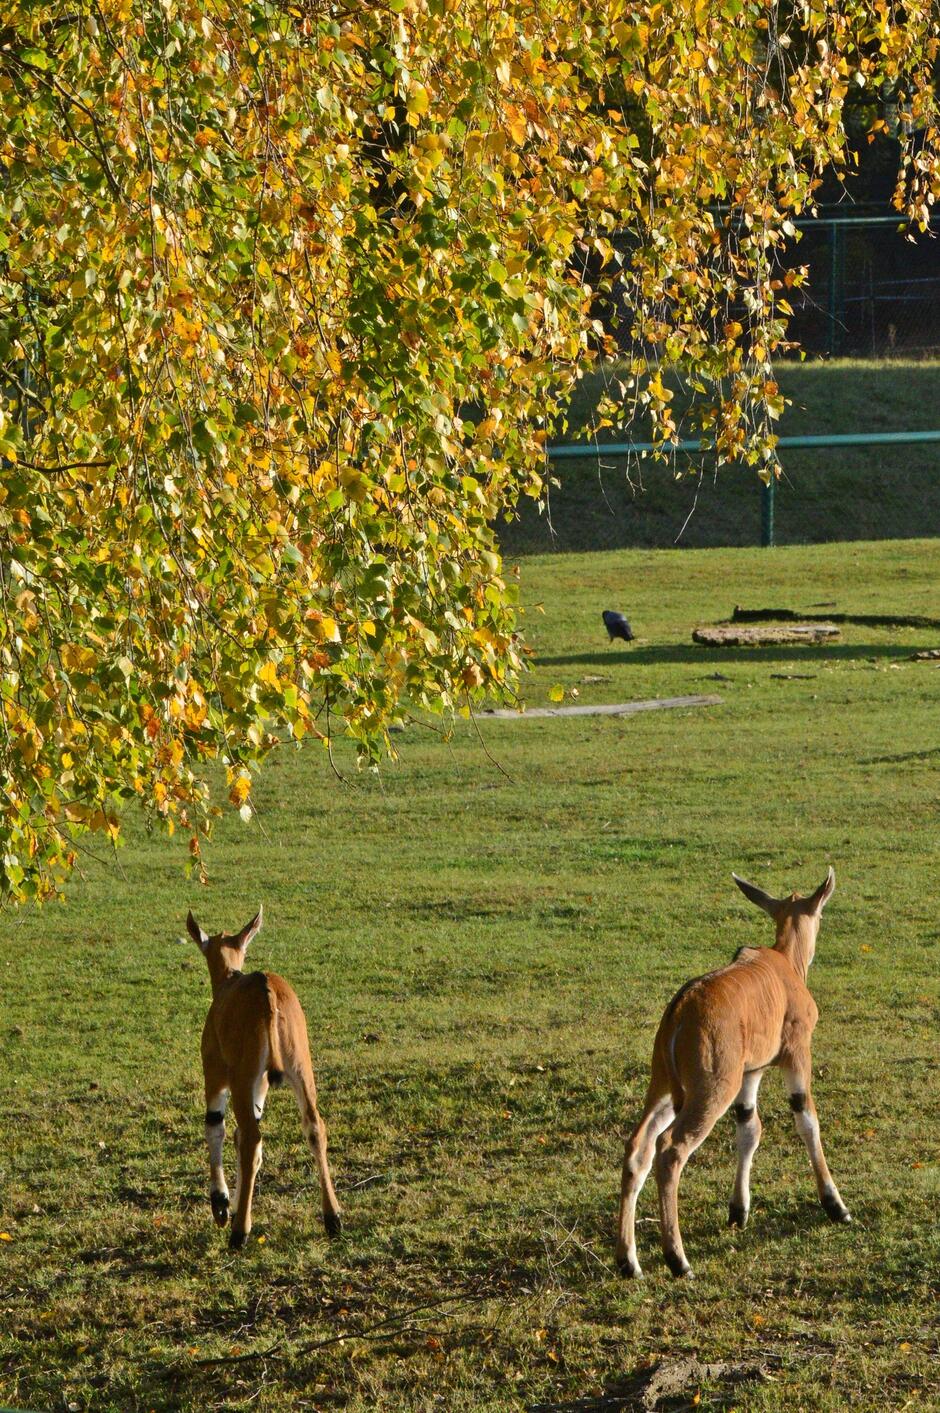 Na zdjęciu widać dwa jelenie stojące w zielonej łące obok drzewa. Jelenie są brązowe z białym brzuchem i ciemnymi pasami na nogach. Mają długie uszy, spiczaste rogi i grzywę na głowie.